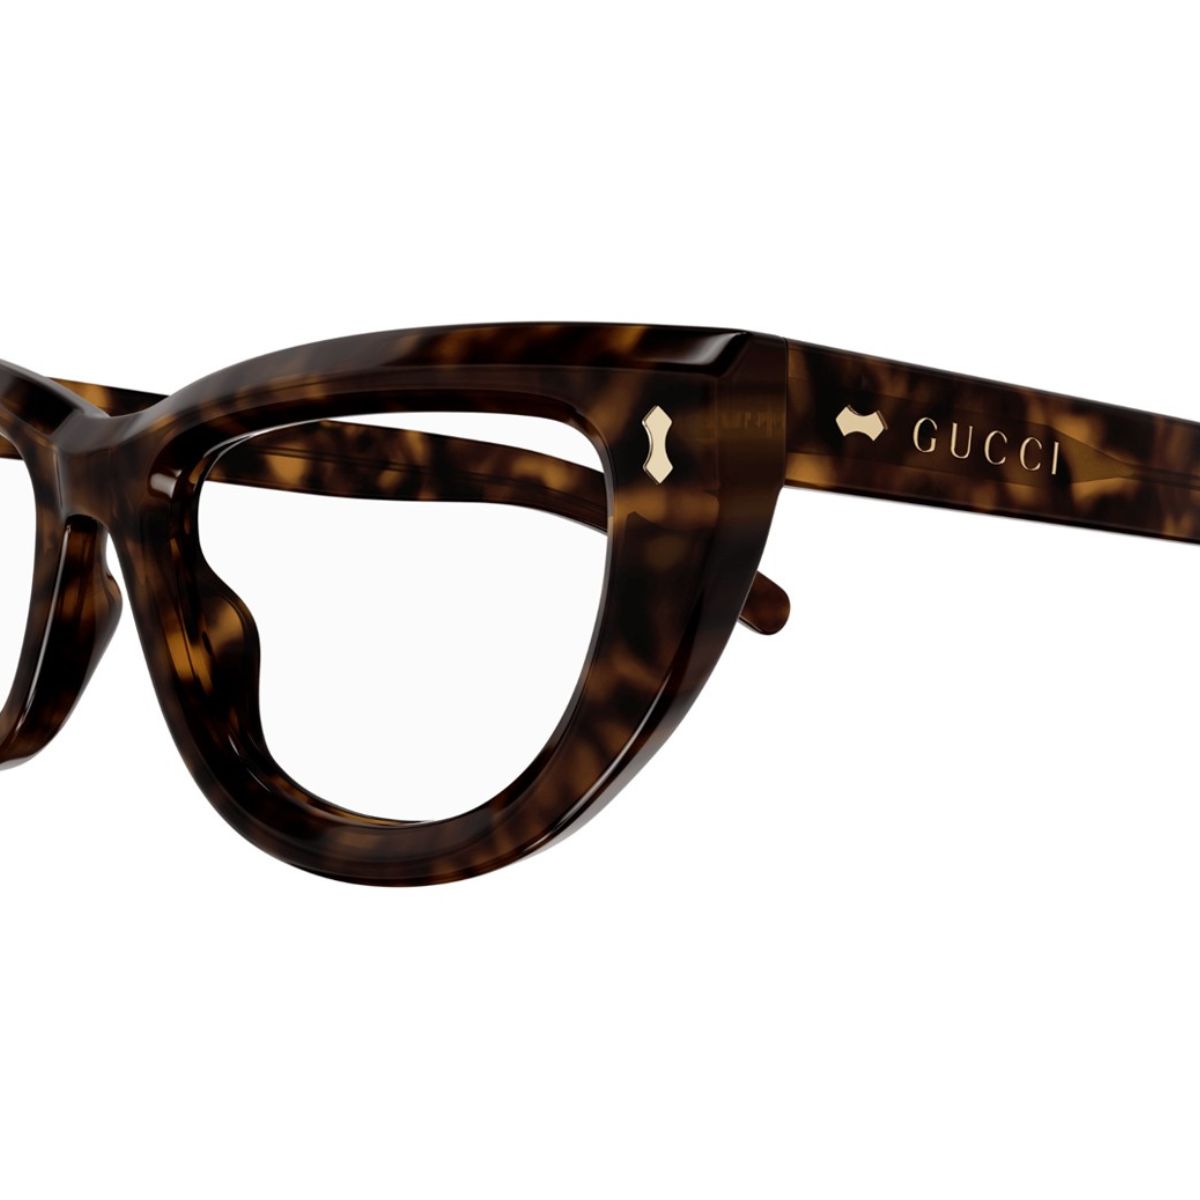 "Crafted Gucci Eyeglasses - Model 1521O 002 frames designed for fashion-forward women seeking sophistication."